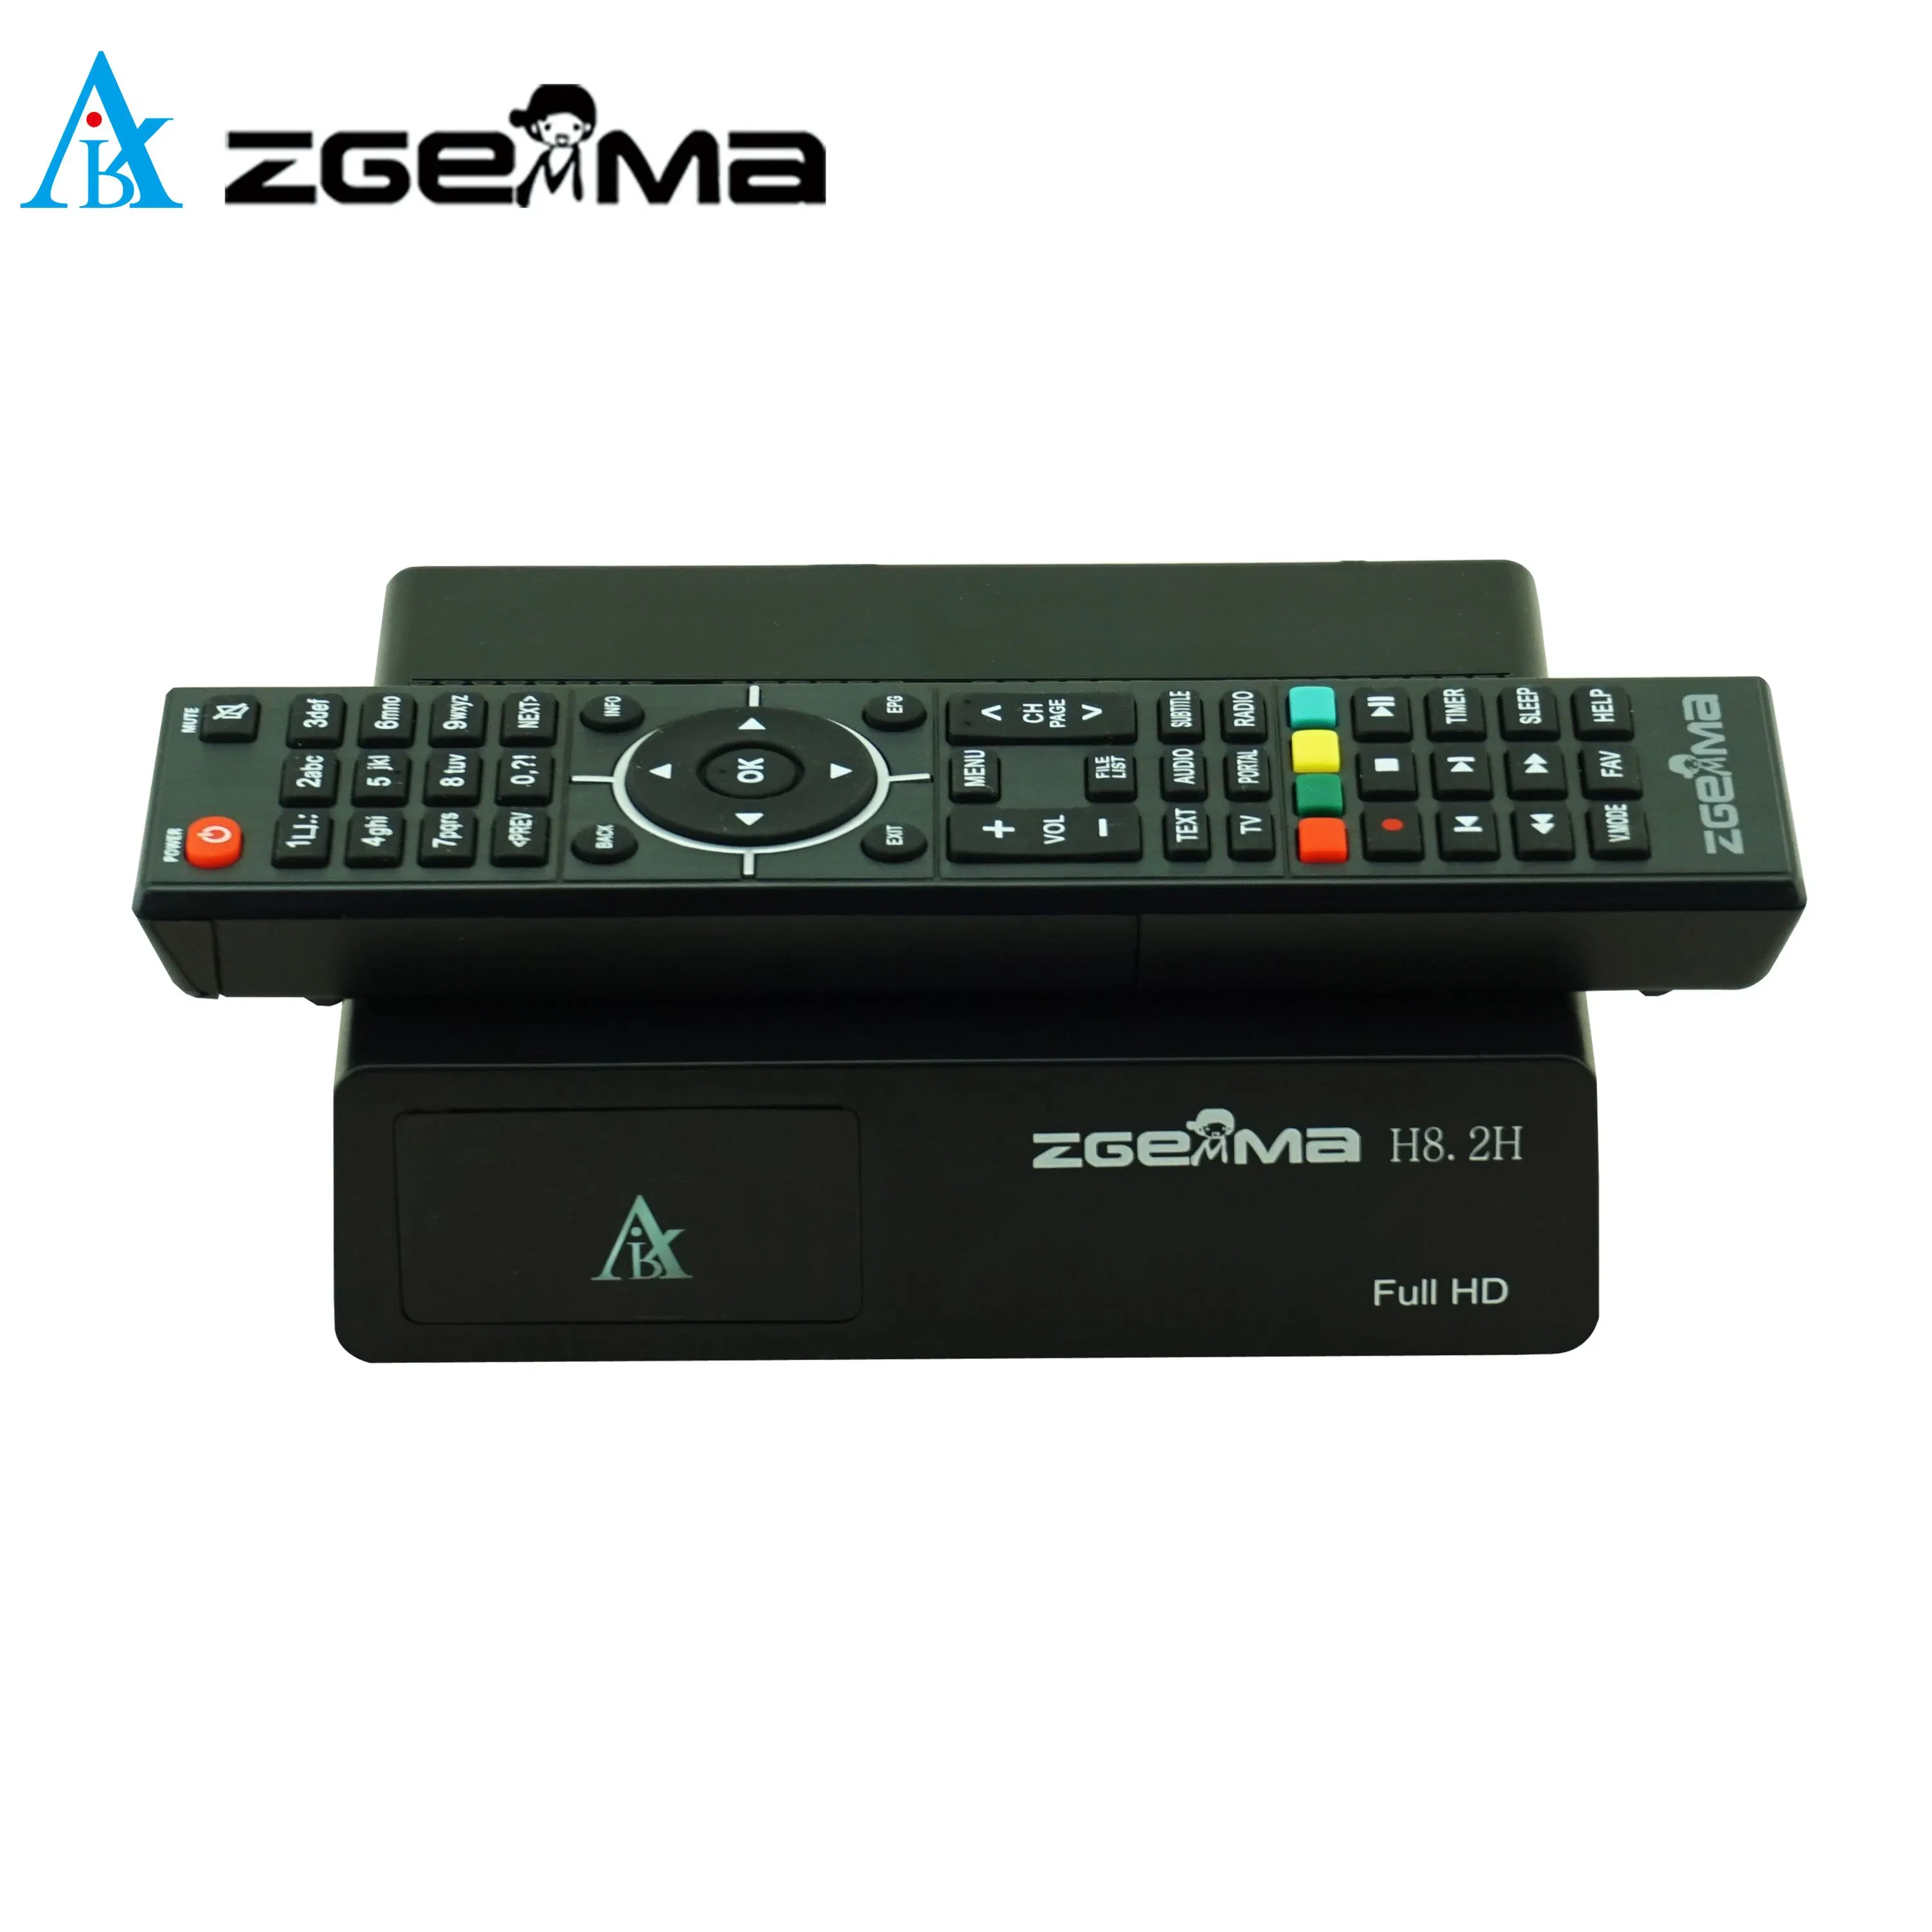 Zgemma H8.2h Спутниковый ТВ-ресивер - Разрешение High Definition 1080P, встроенный тюнер DVB-S2X + DVB-T2/C.